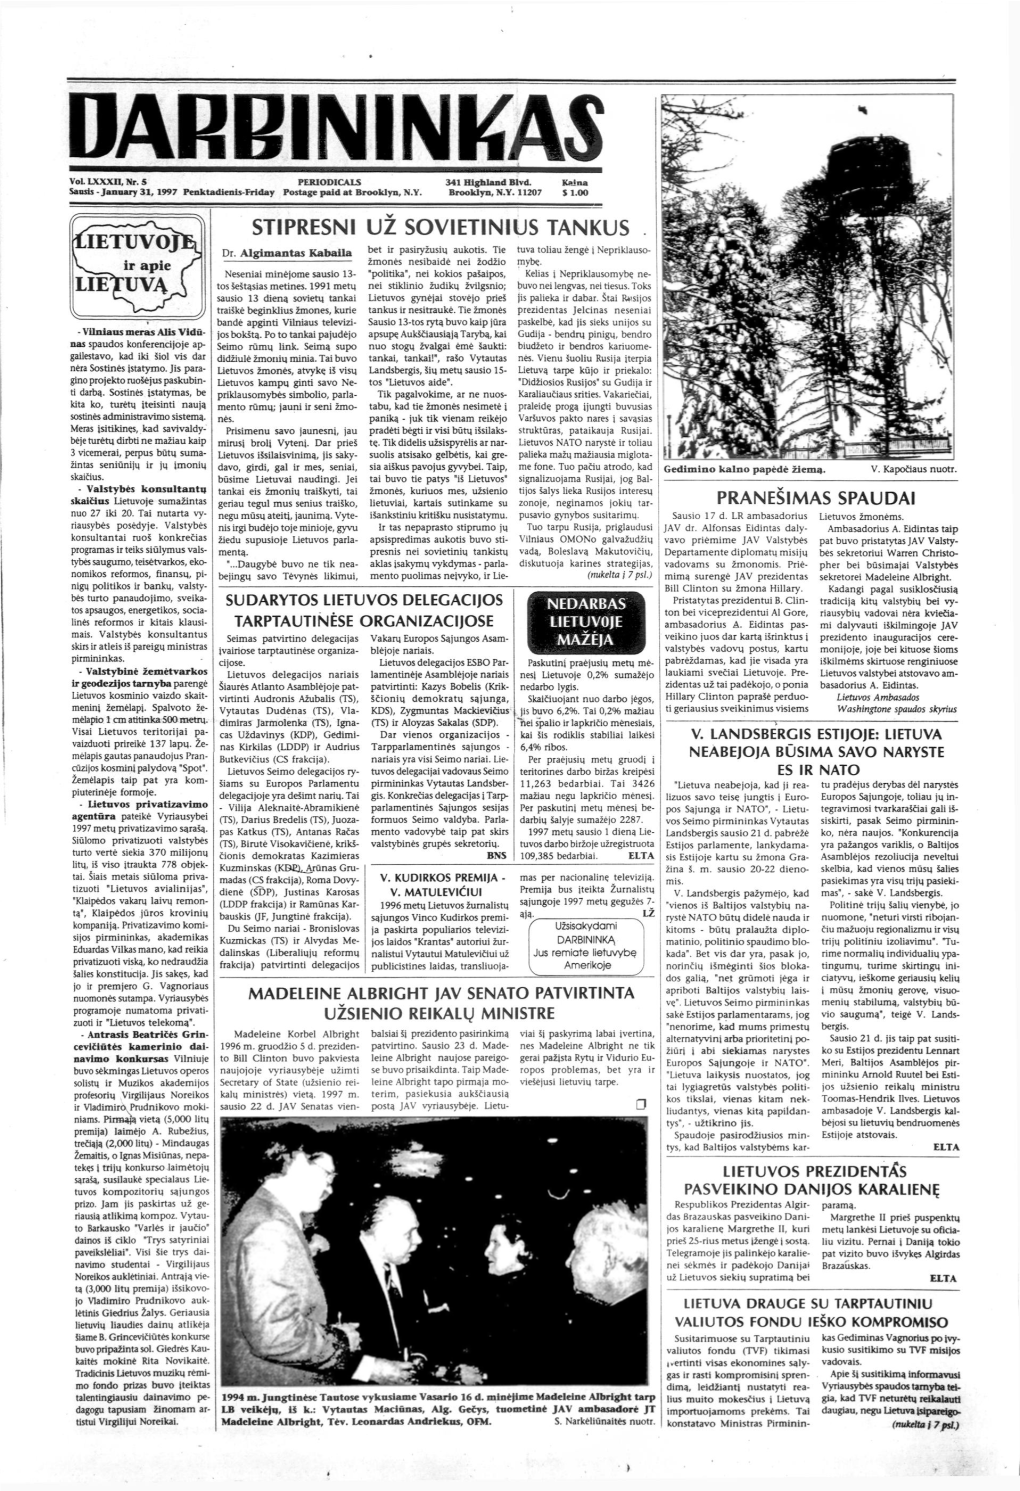 January 31, 1997 Penktadienis-Friday Postage Paid at Brookiyn, N.Y